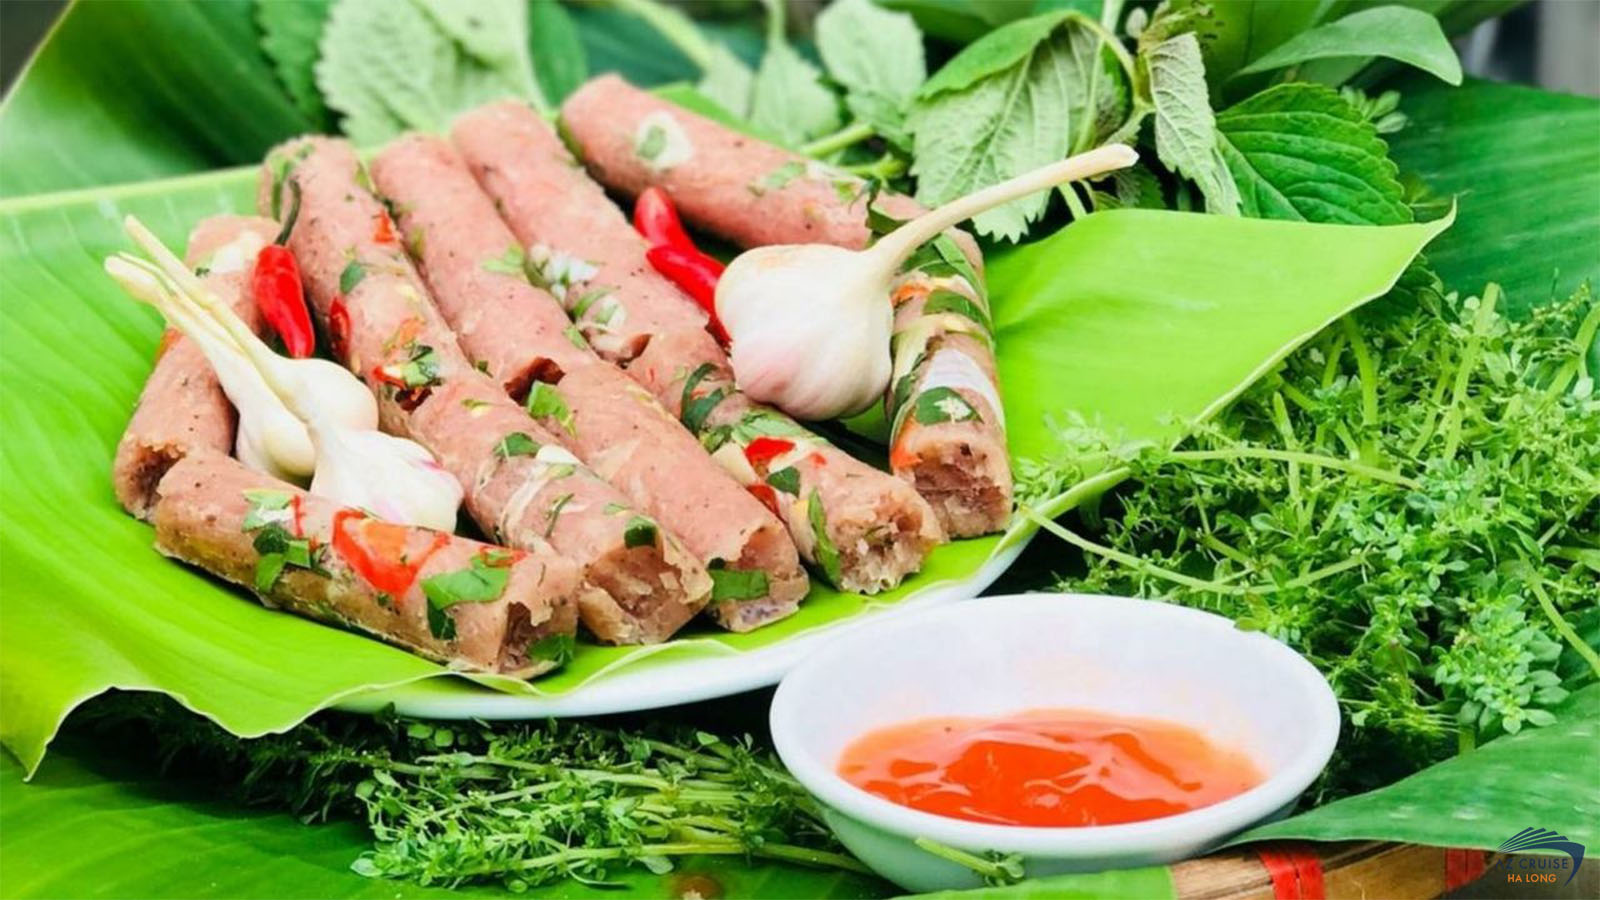 Nem chua Quảng Yên được biết đến là một món ăn dân dã với hương vị thơm ngon tuyệt hảo